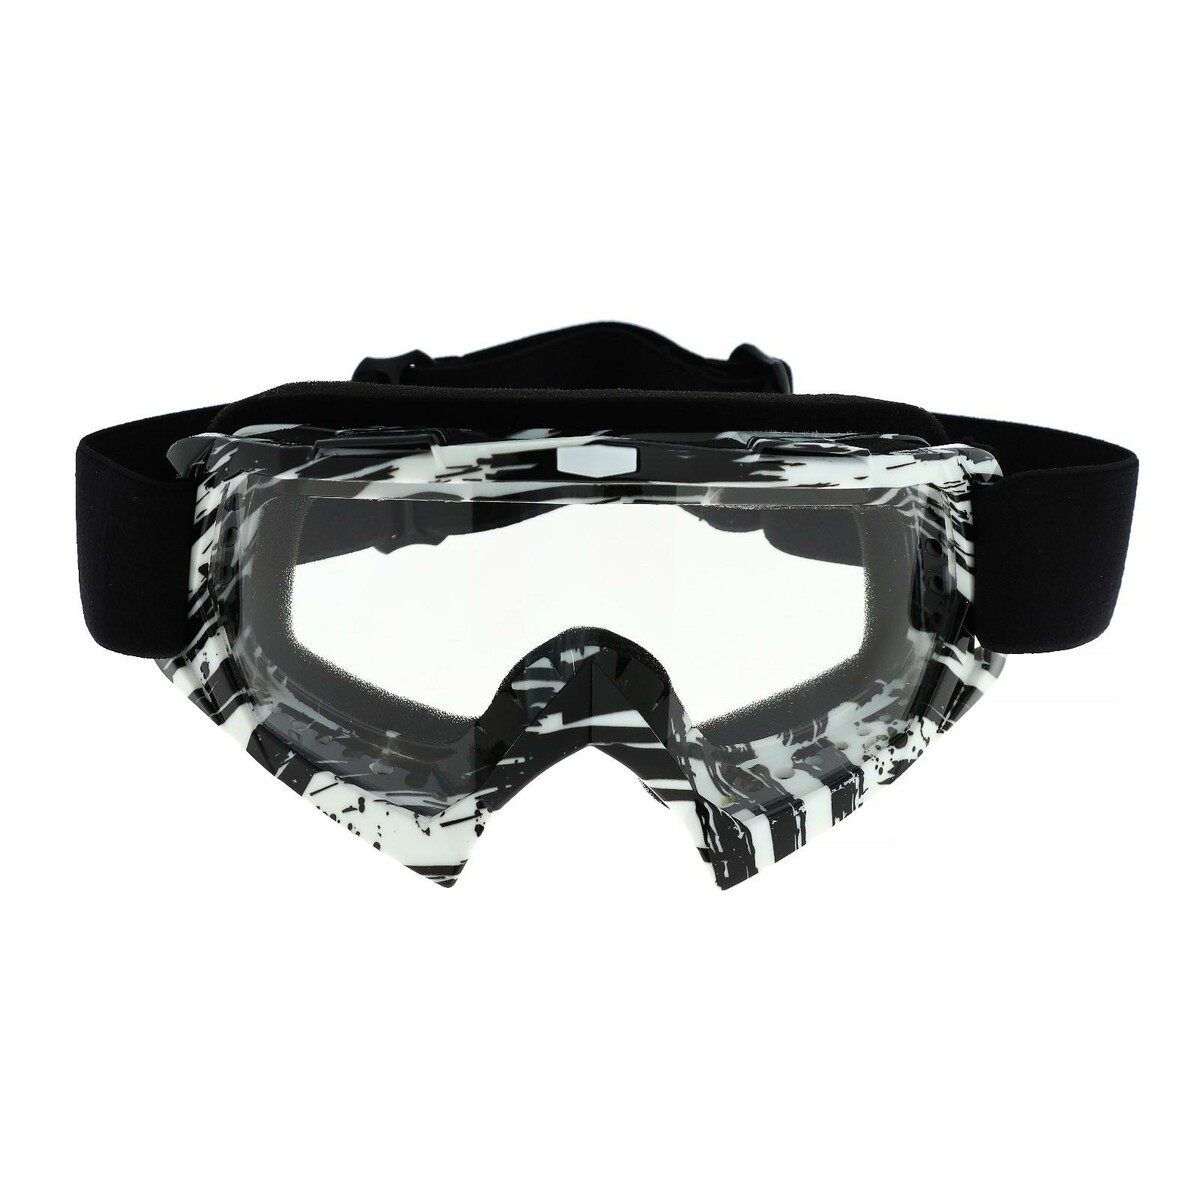 Очки-маска для езды на мототехнике, стекло прозрачное, цвет белый-черный, ом-20 очки маска для езды на мототехнике стекло синий хамелеон оранжевый ом 7